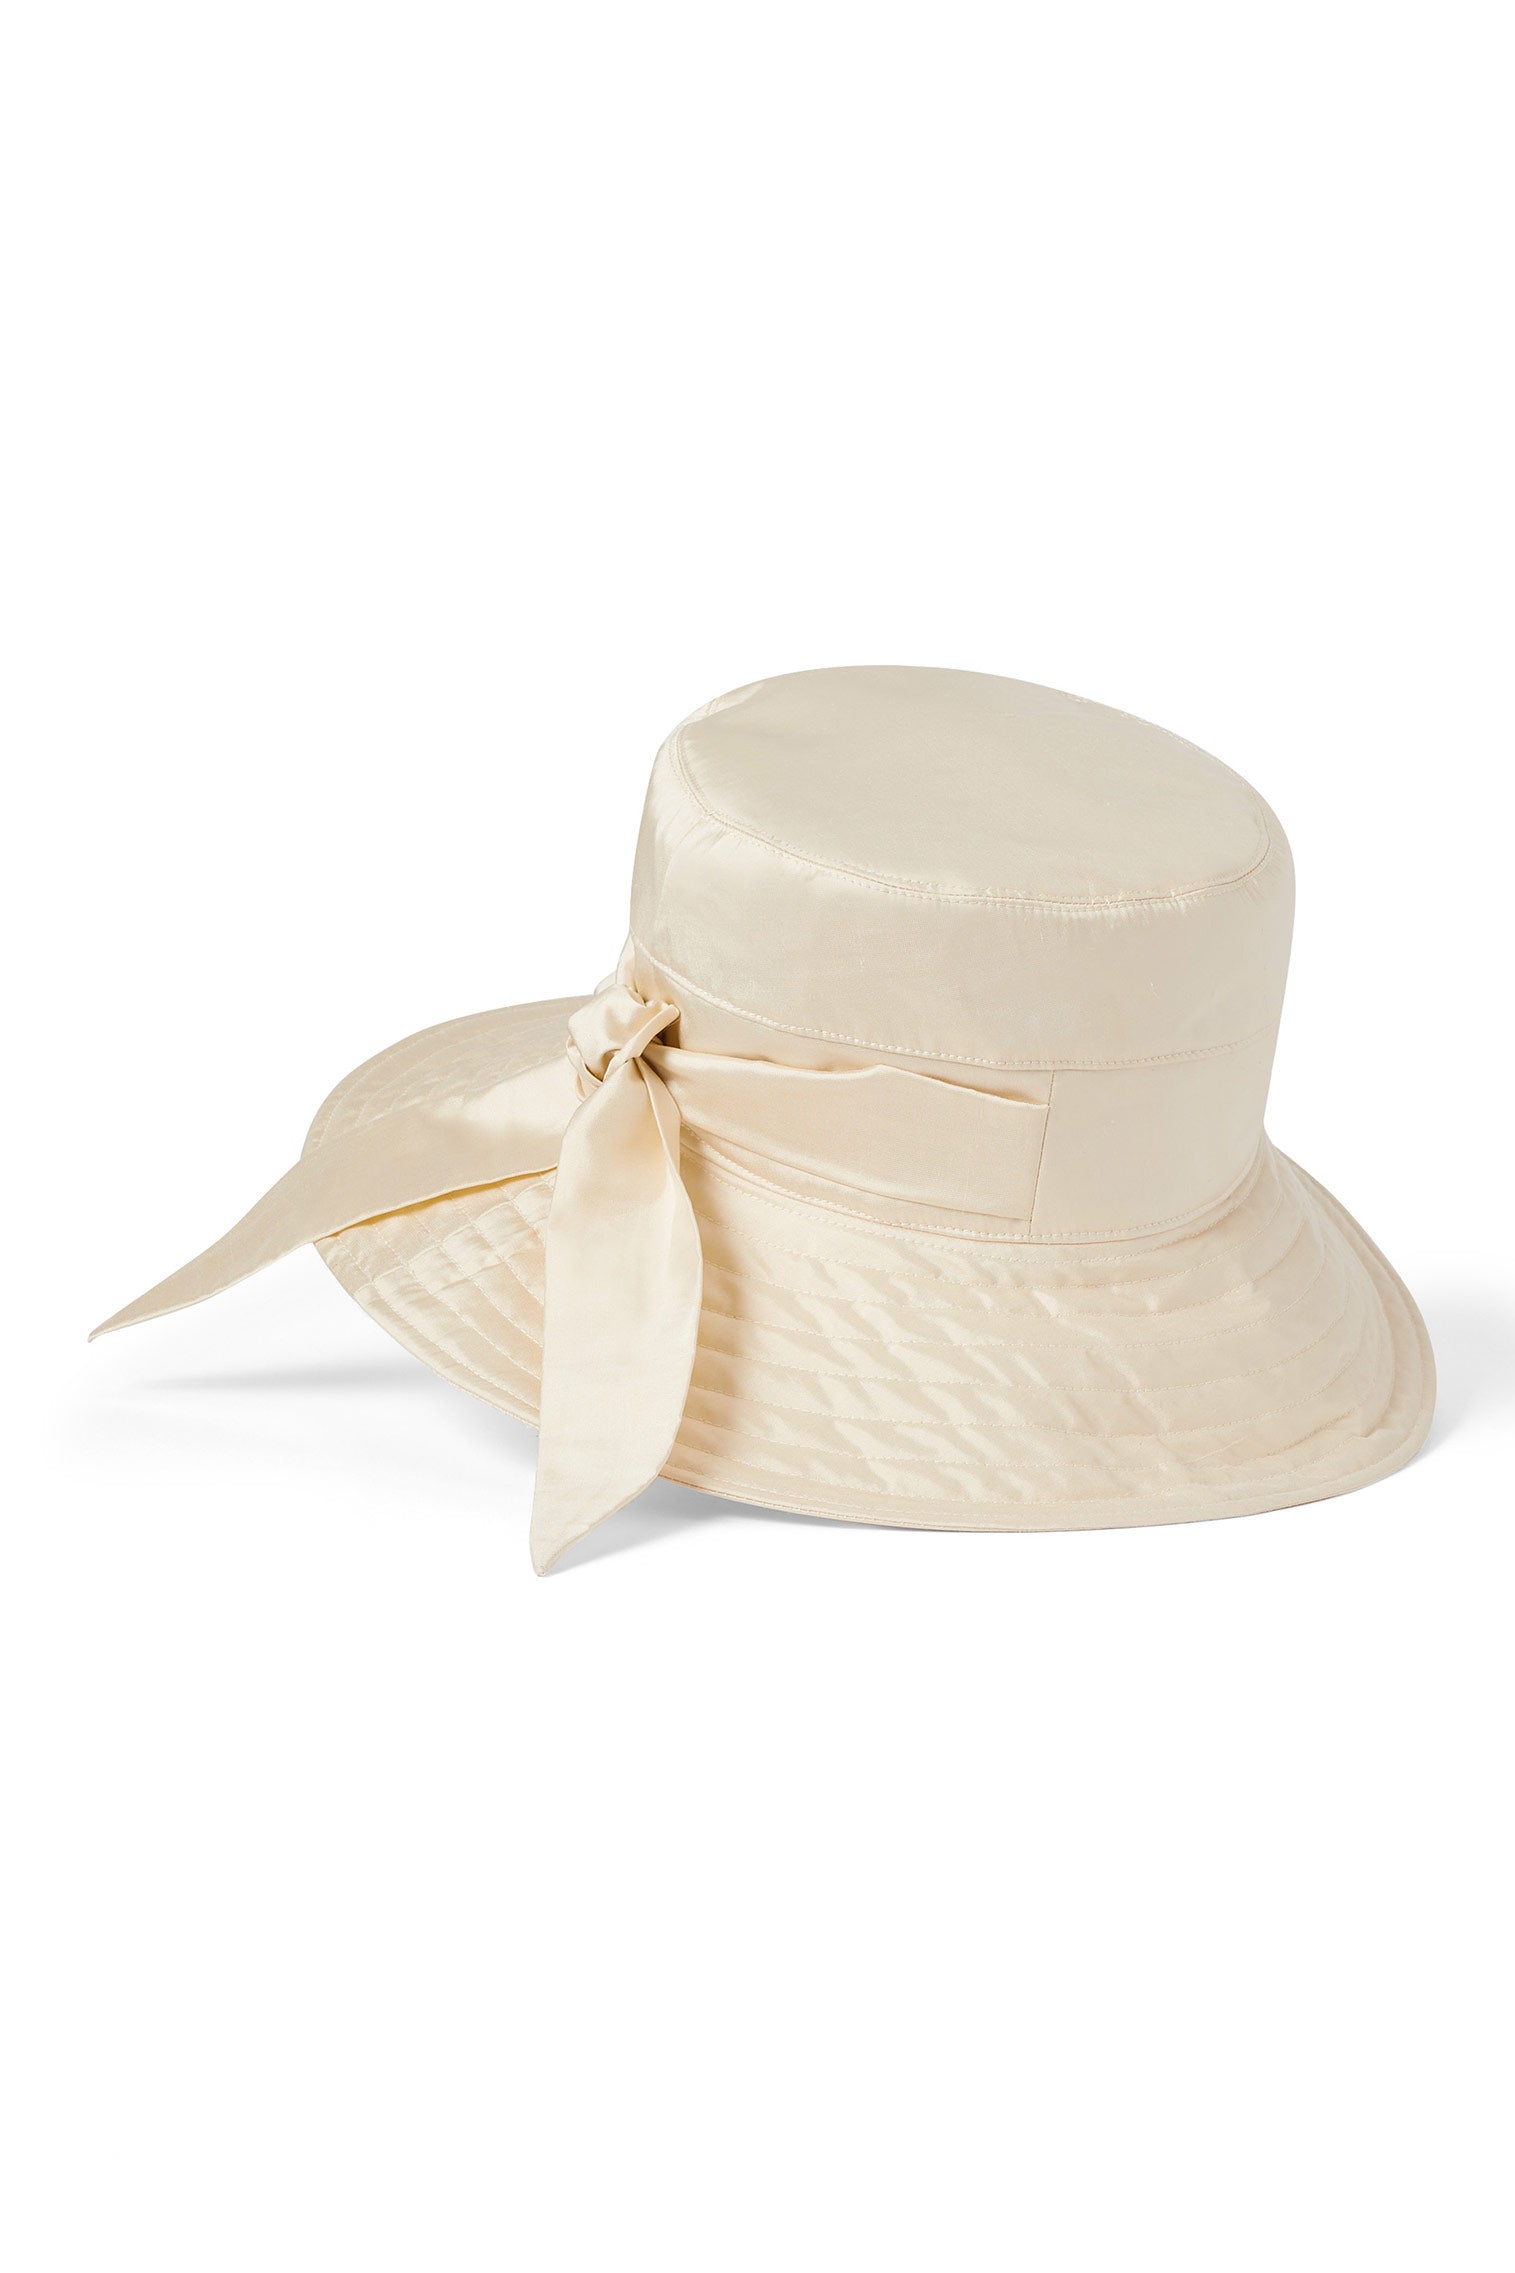 Brigitte Silk Sun Hat - All Ready to Wear - Lock & Co. Hatters London UK